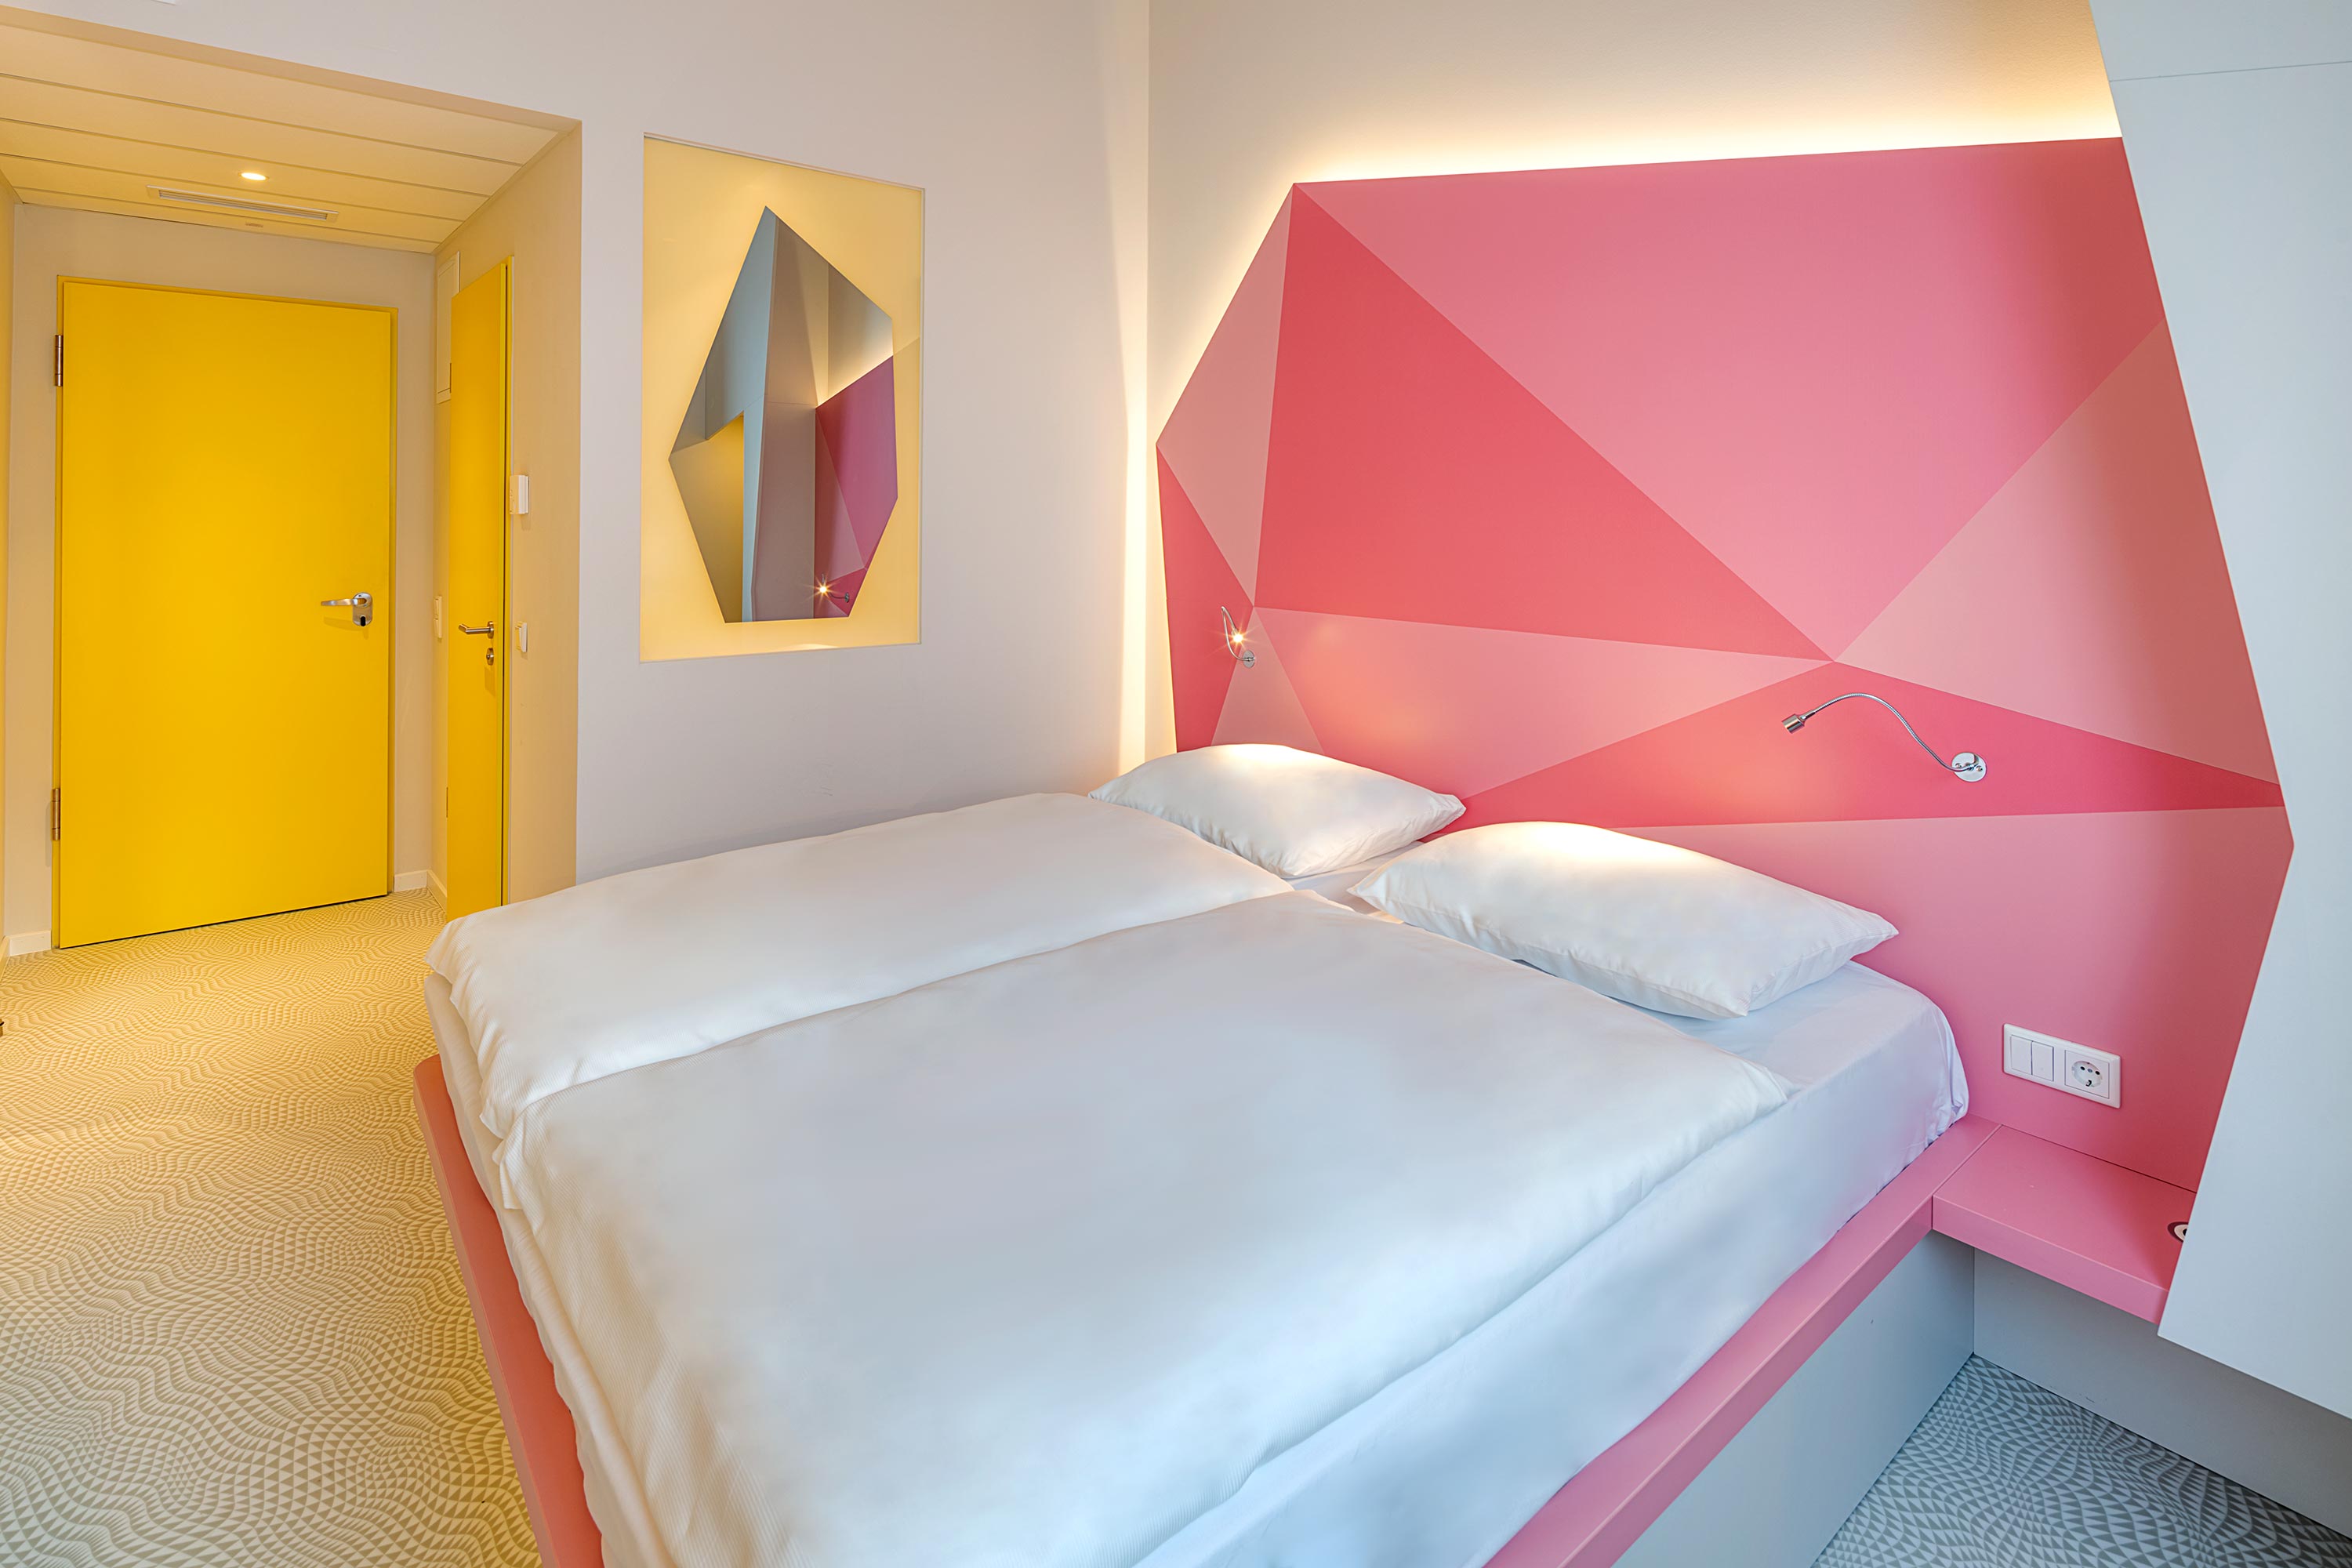 Ein Doppelbett vor einer rosa beleuchteten Wand und einer gelben Türe im Hintergrund